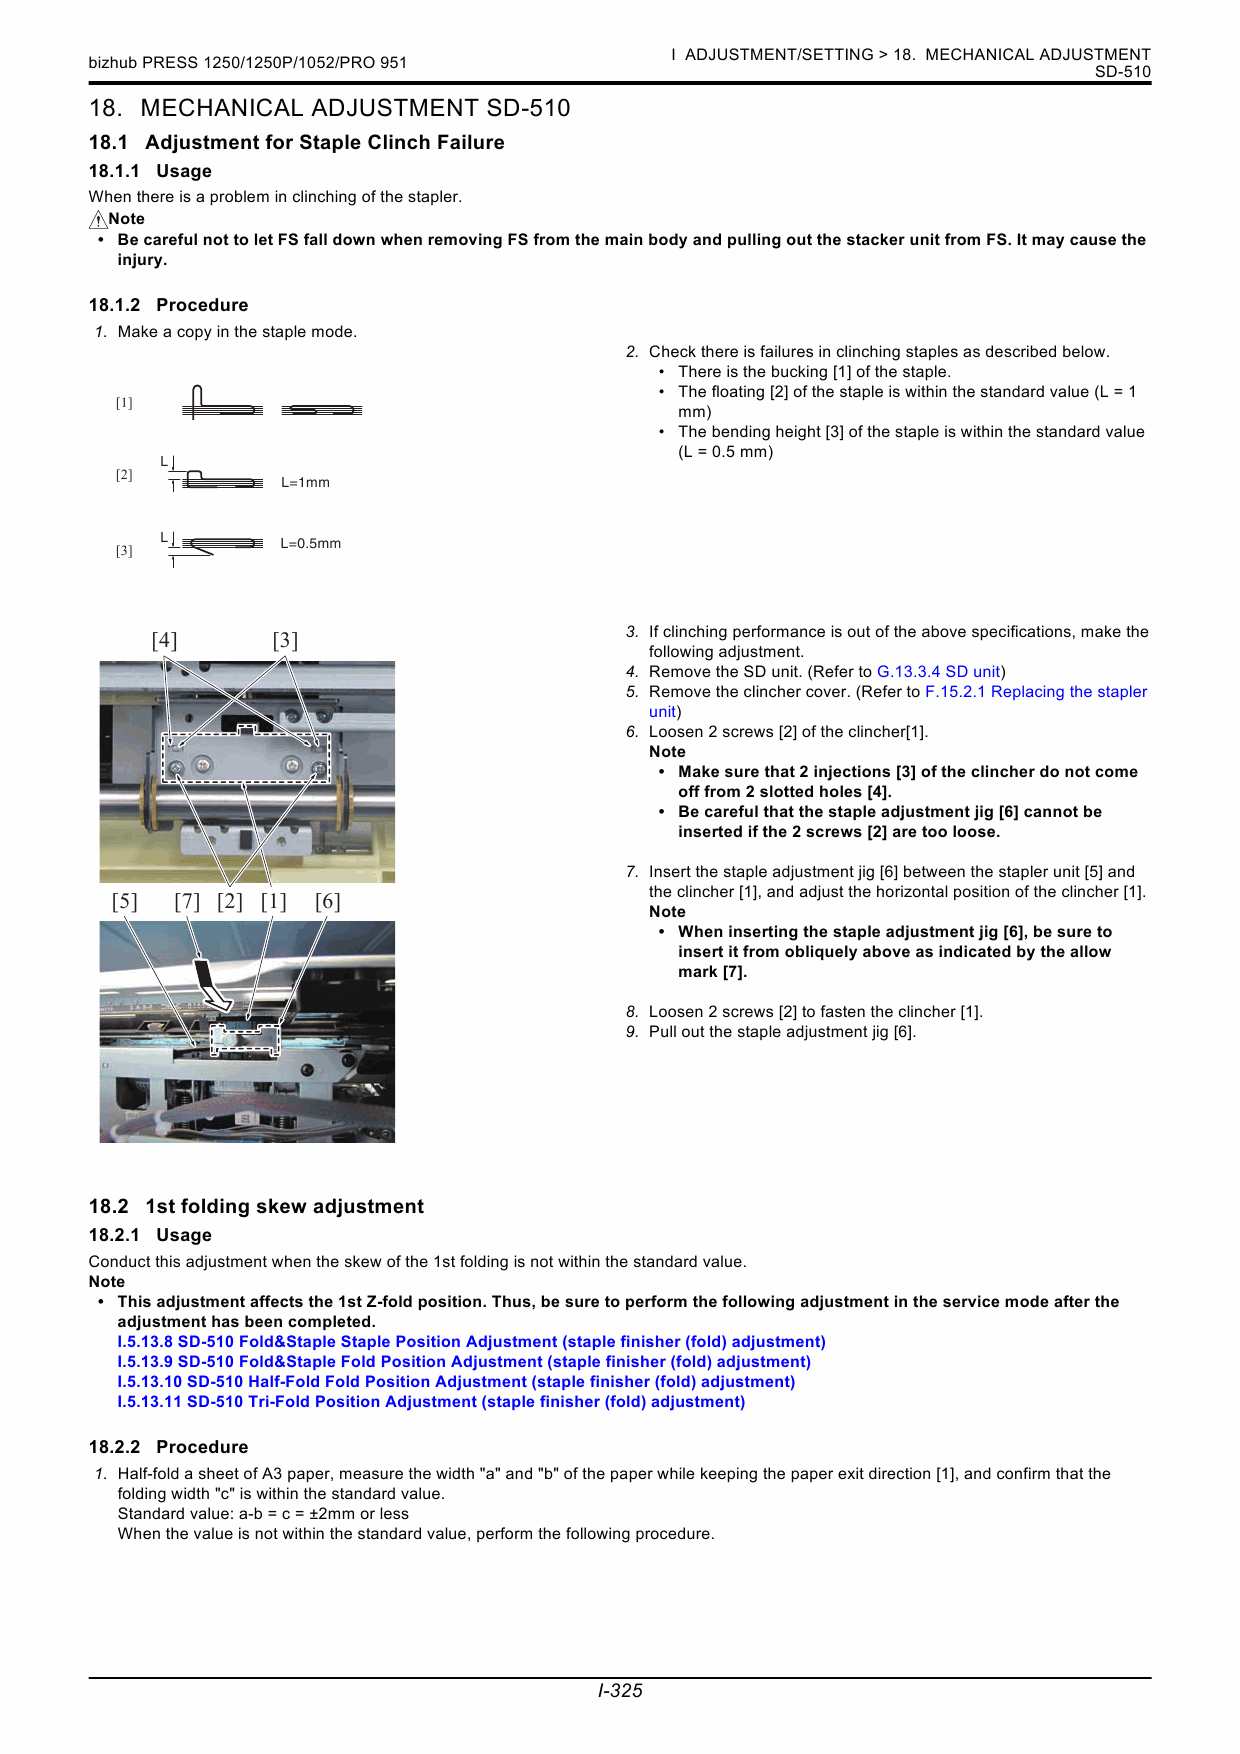 Konica-Minolta bizhub-PRO 951 Service_Manual-5